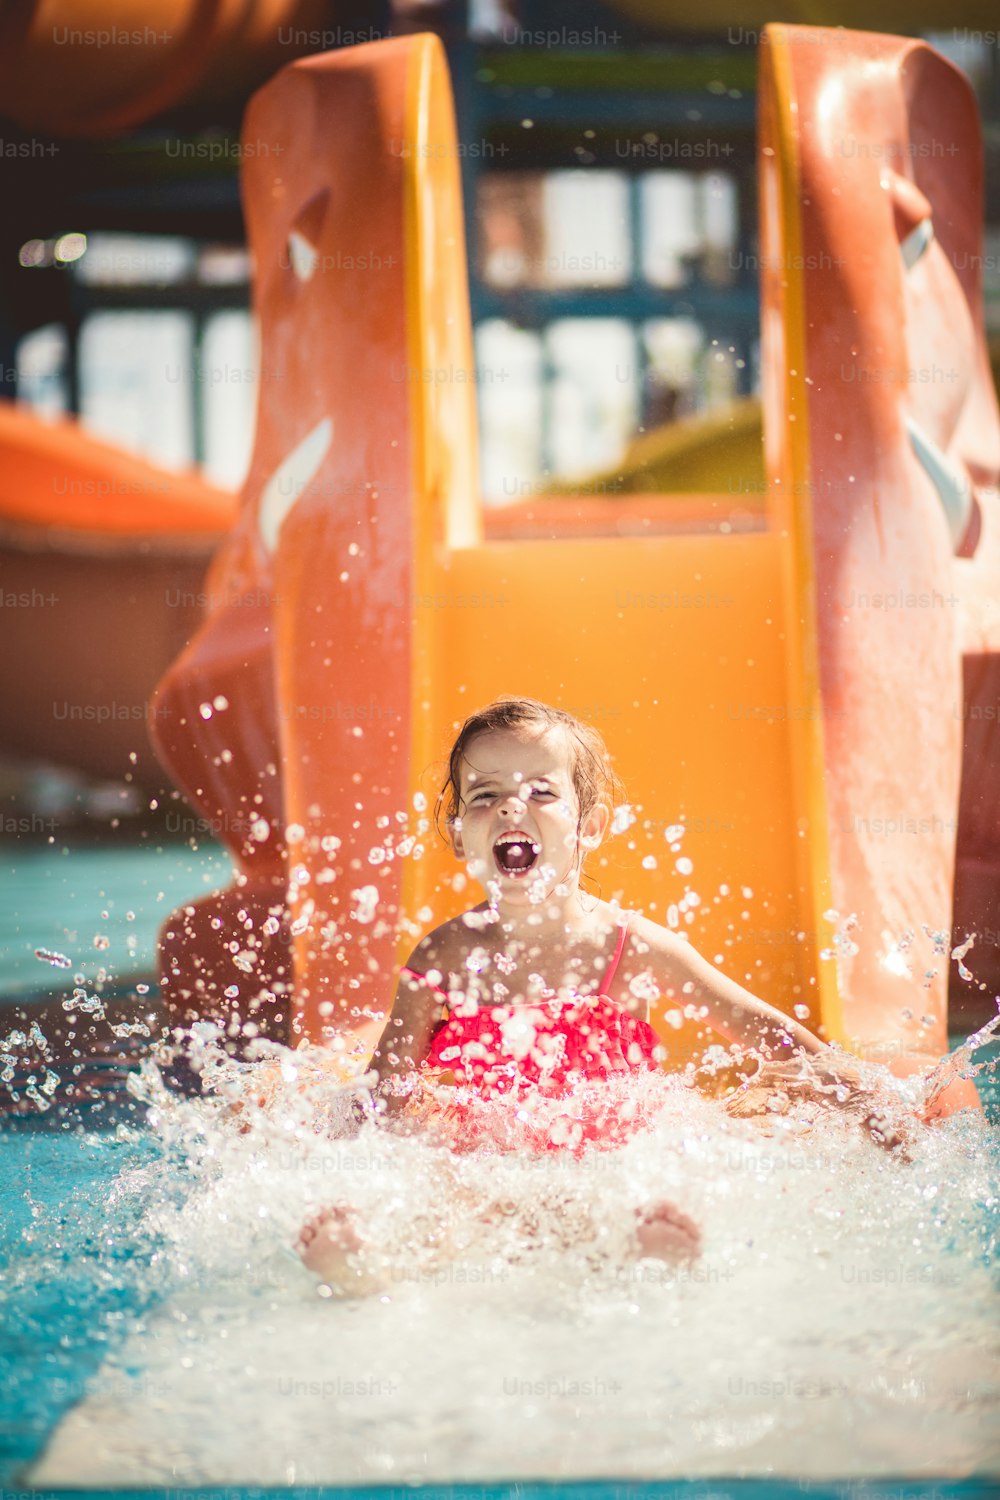 Summer days full of fun. Child having fun in pool.